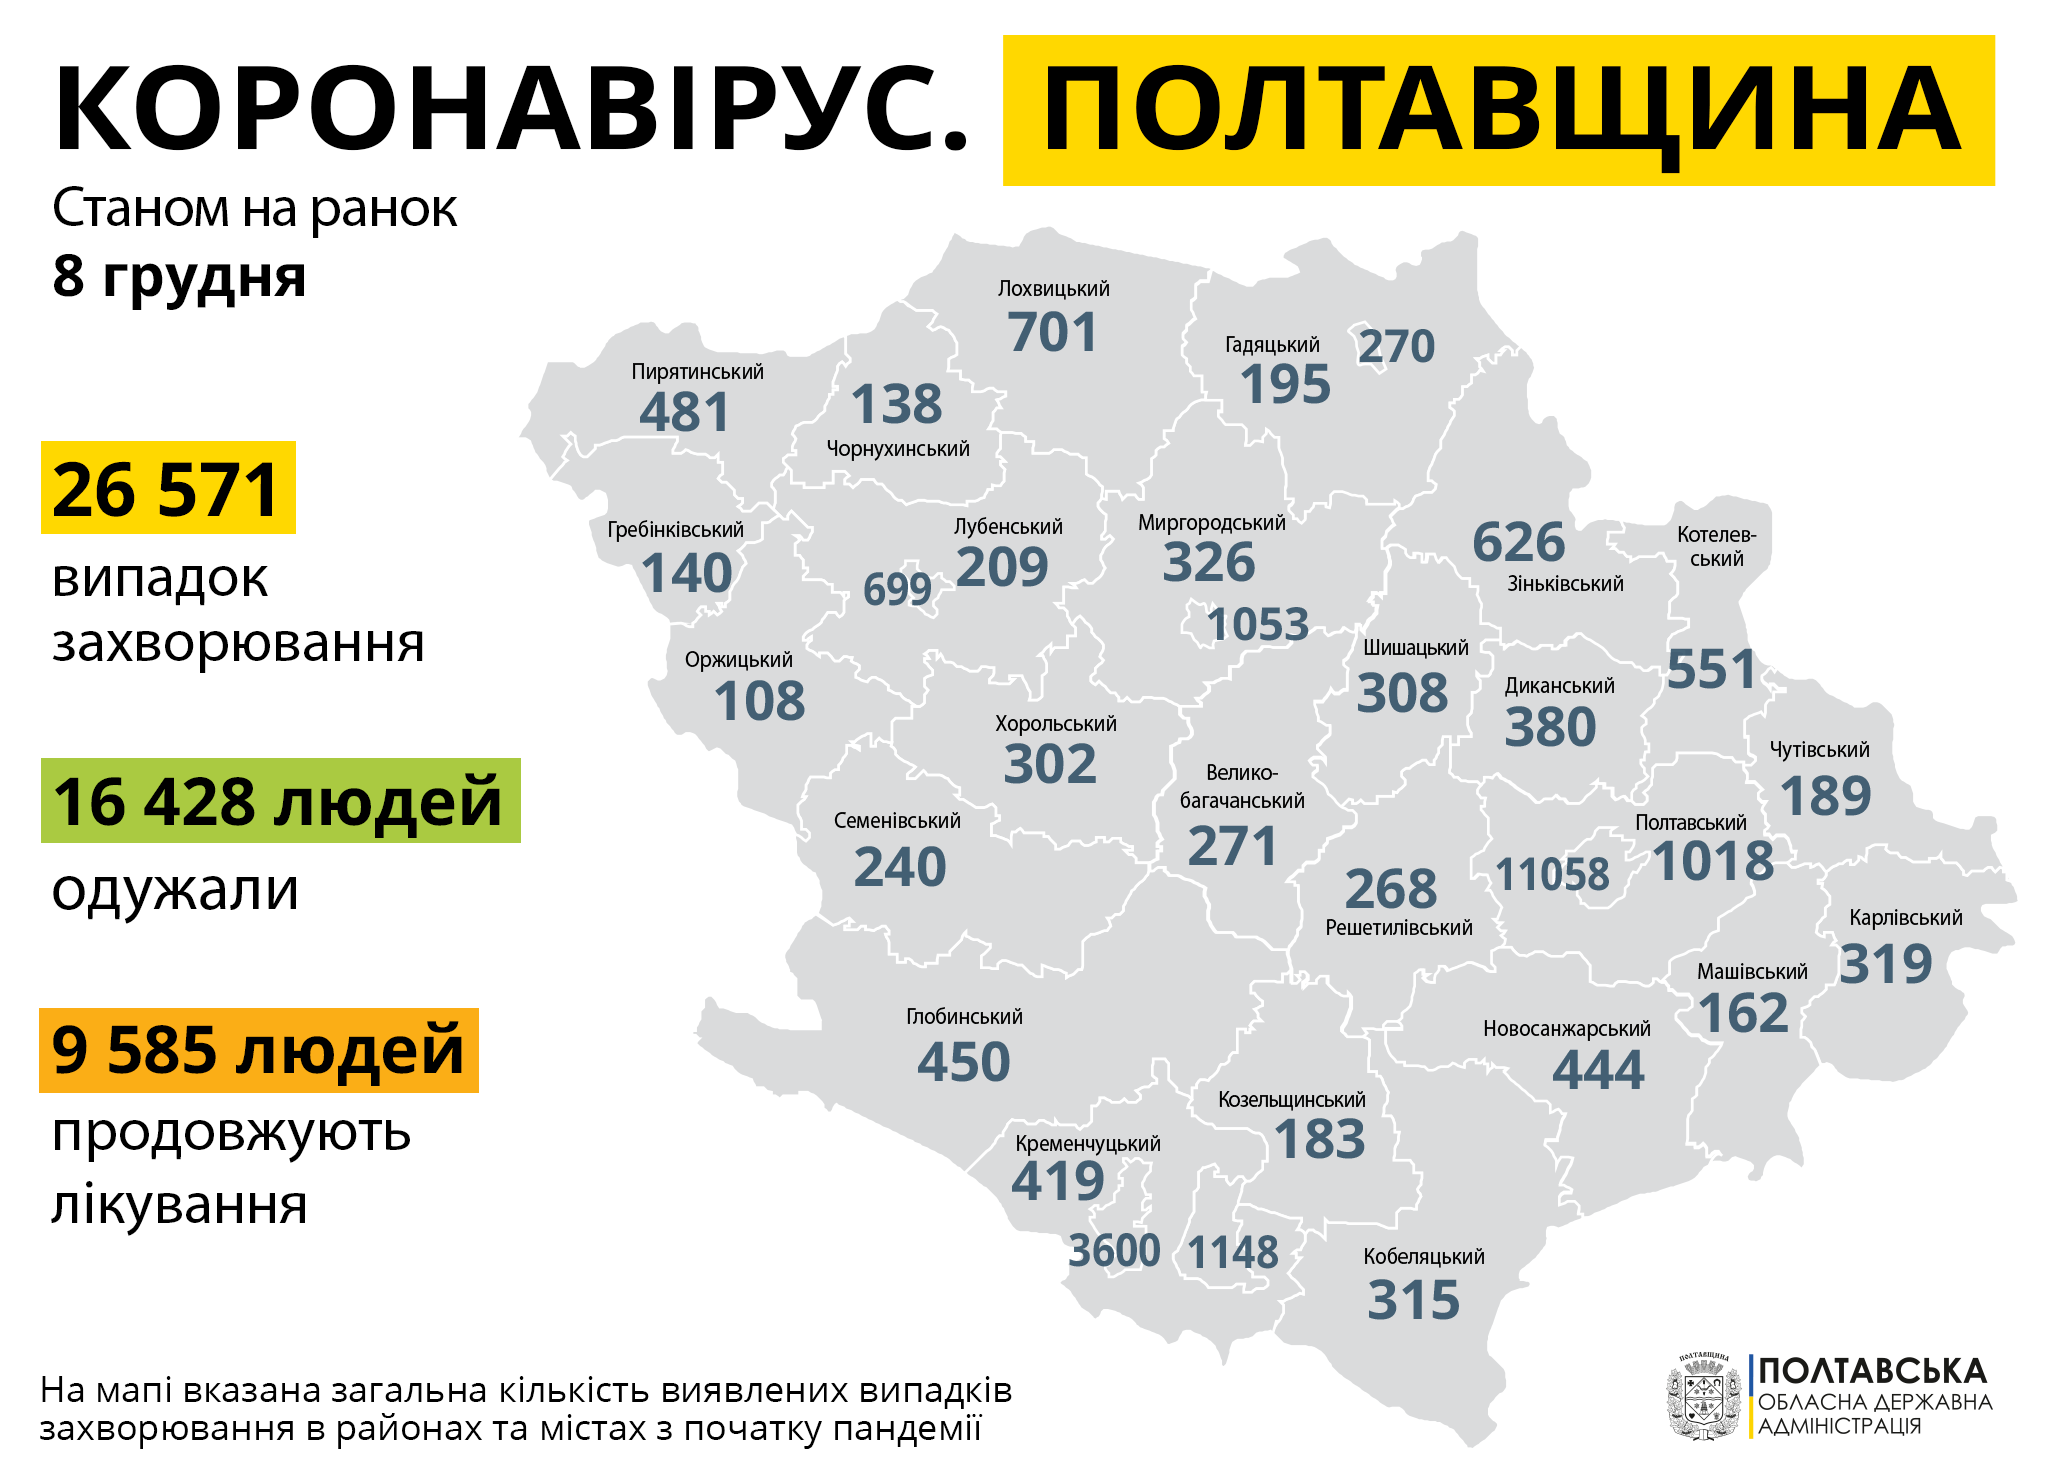  На Полтавщині за минулу добу зареєстровано 916 нових випадків захворювання на COVID-19